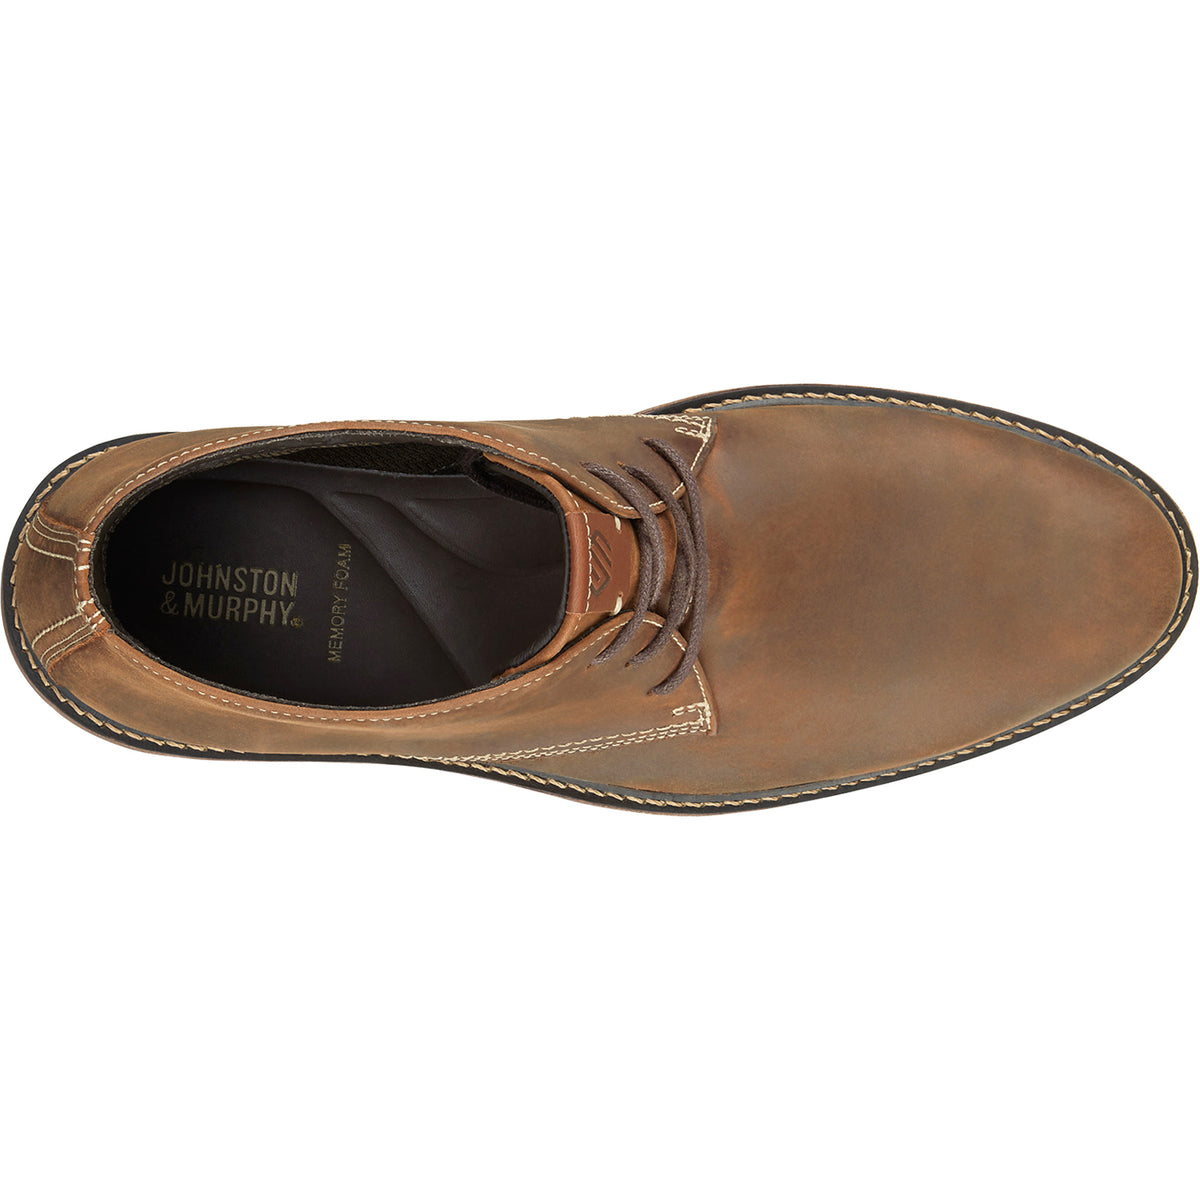 Johnston & Murphy Kipton Chukka | Men's Leather Boots | Footwear etc.